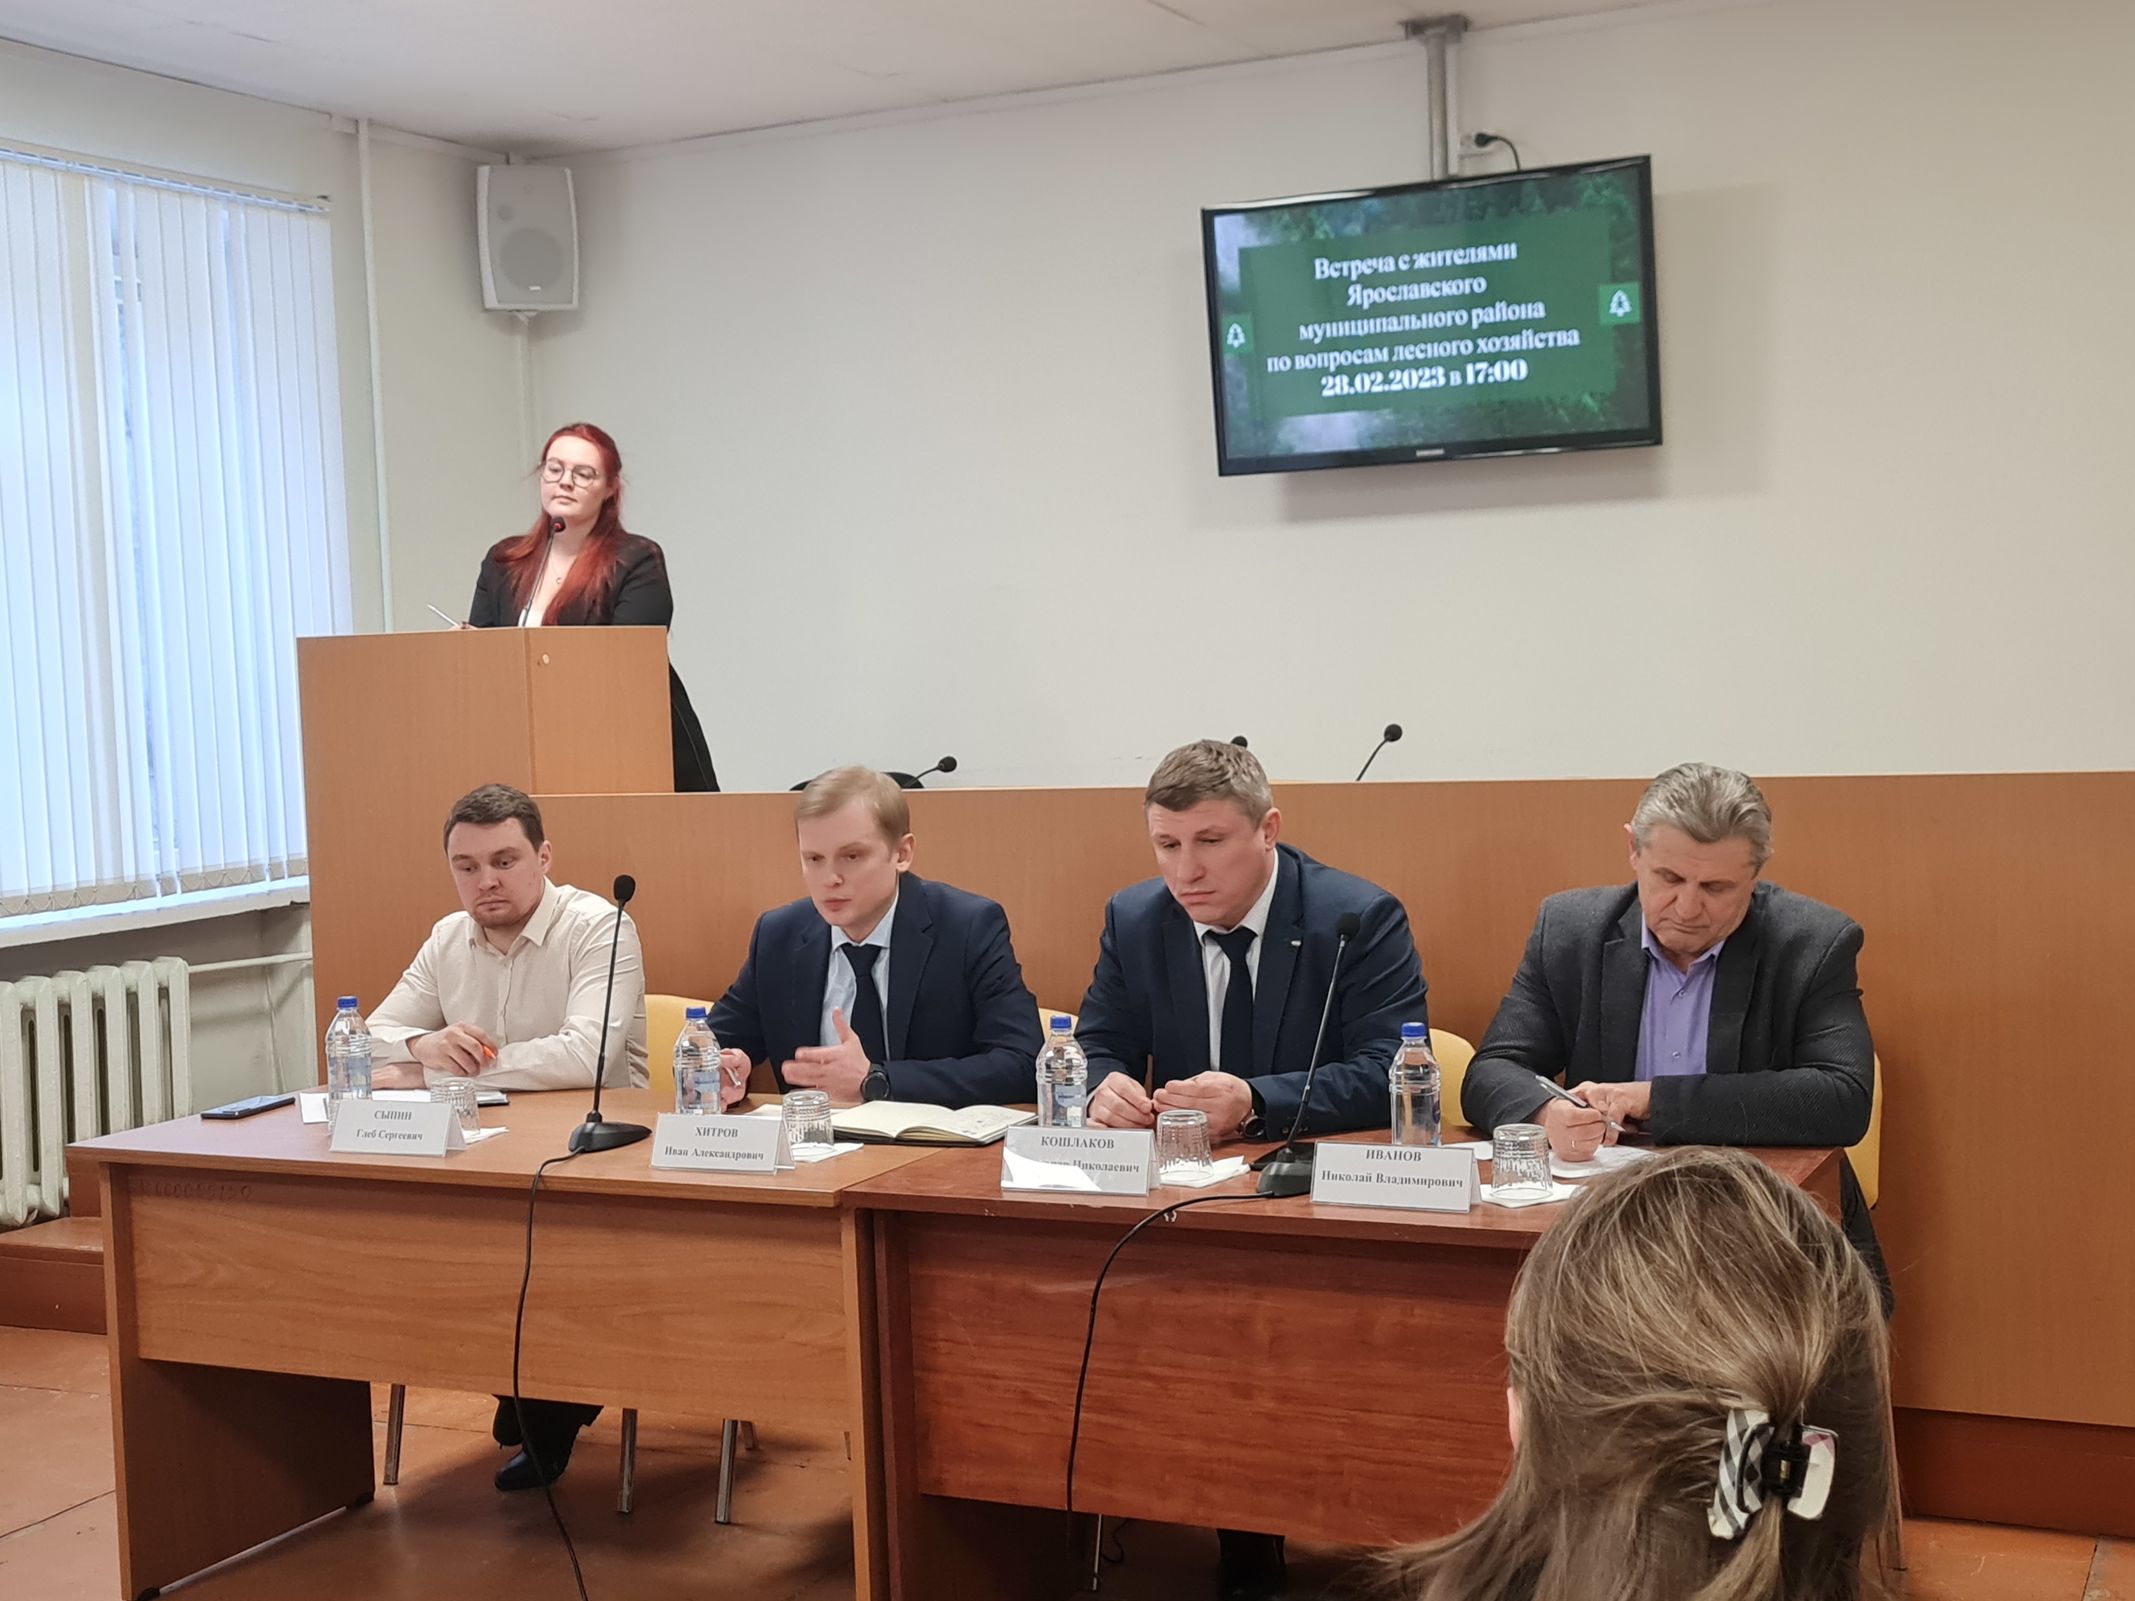 Вопросы сохранения лесов специалисты отрасли обсудили с жителями Ярославской области